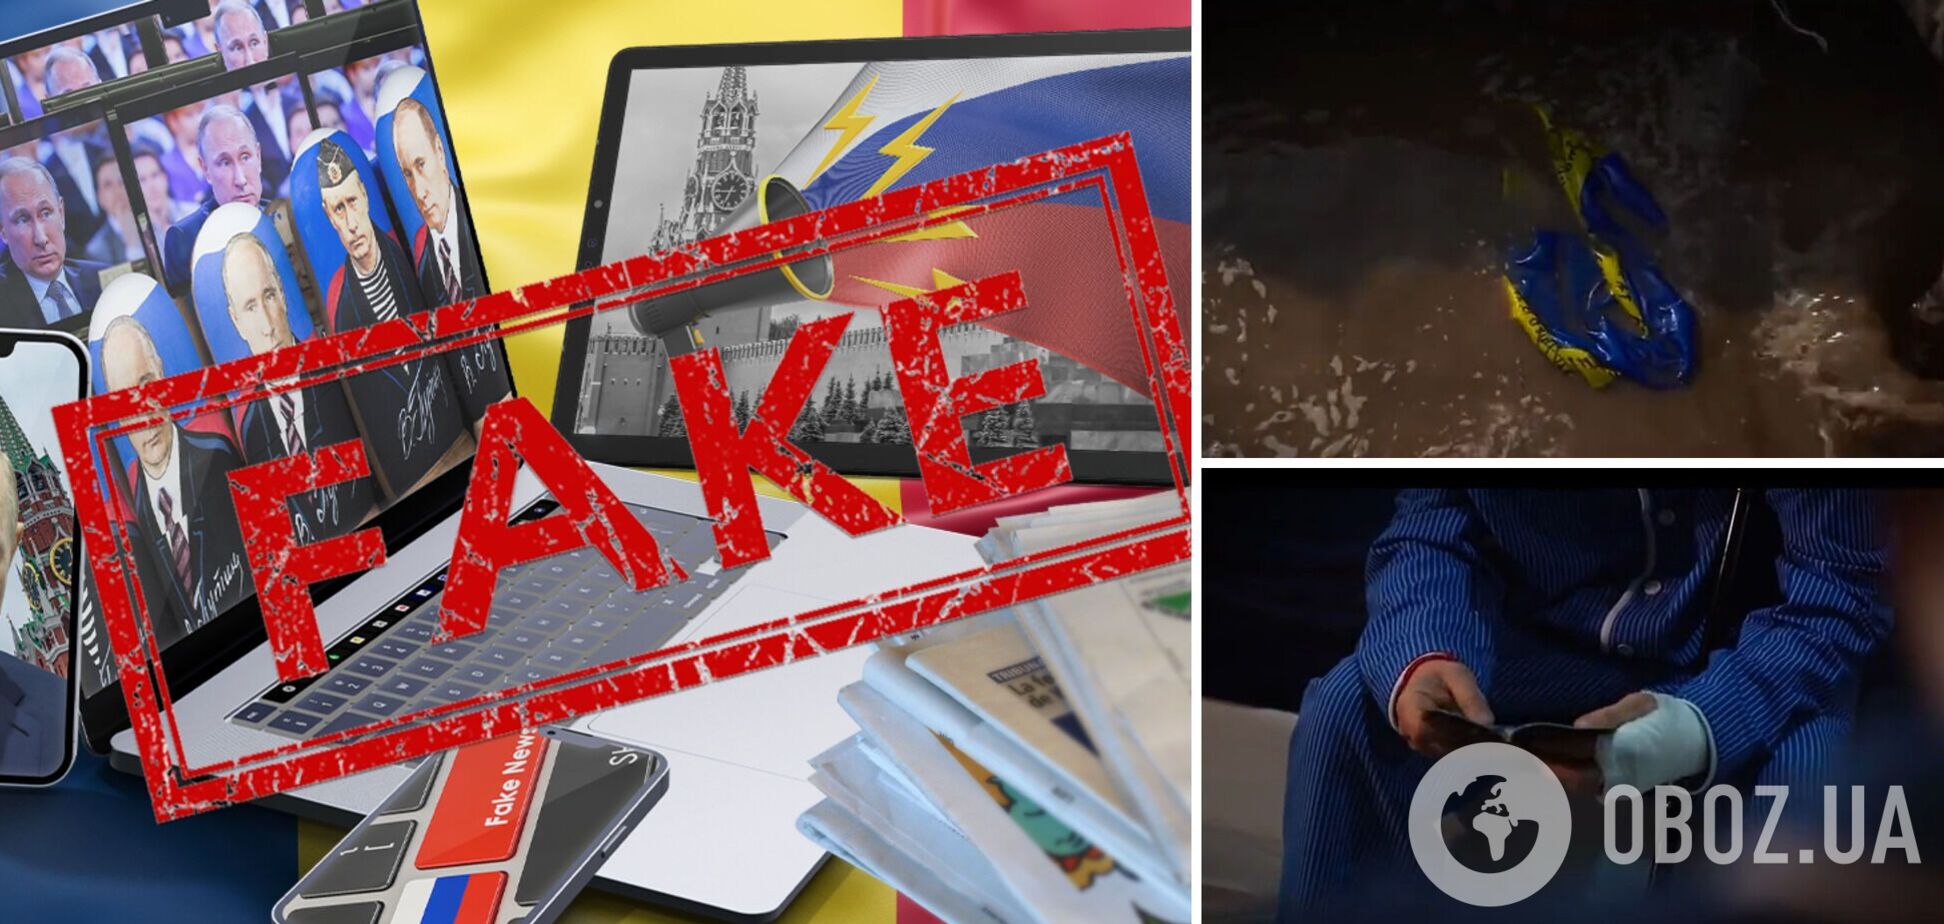 'Ублюдки': россияне запустили пропагандистский ролик с украинцами к 'выборам' Путина и разозлили сеть. Видео